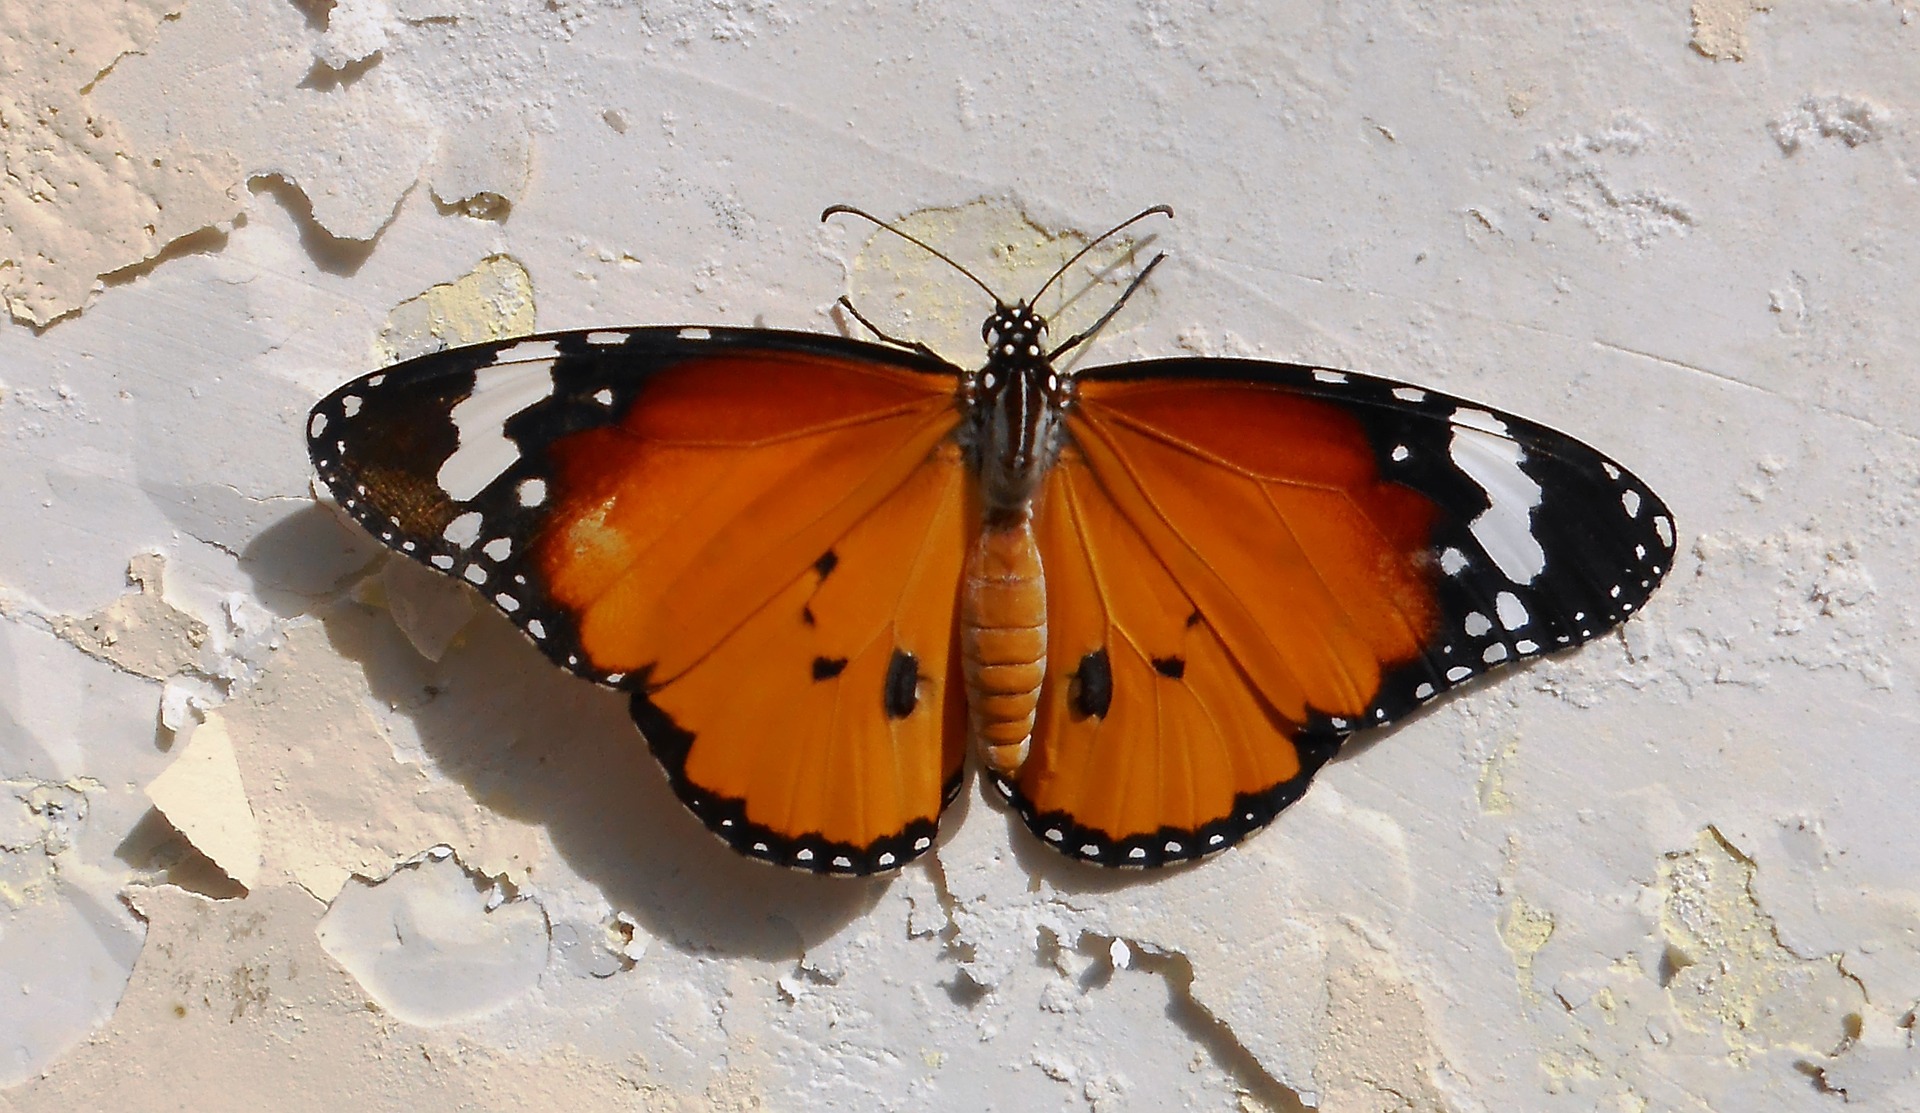 an orange butterfly